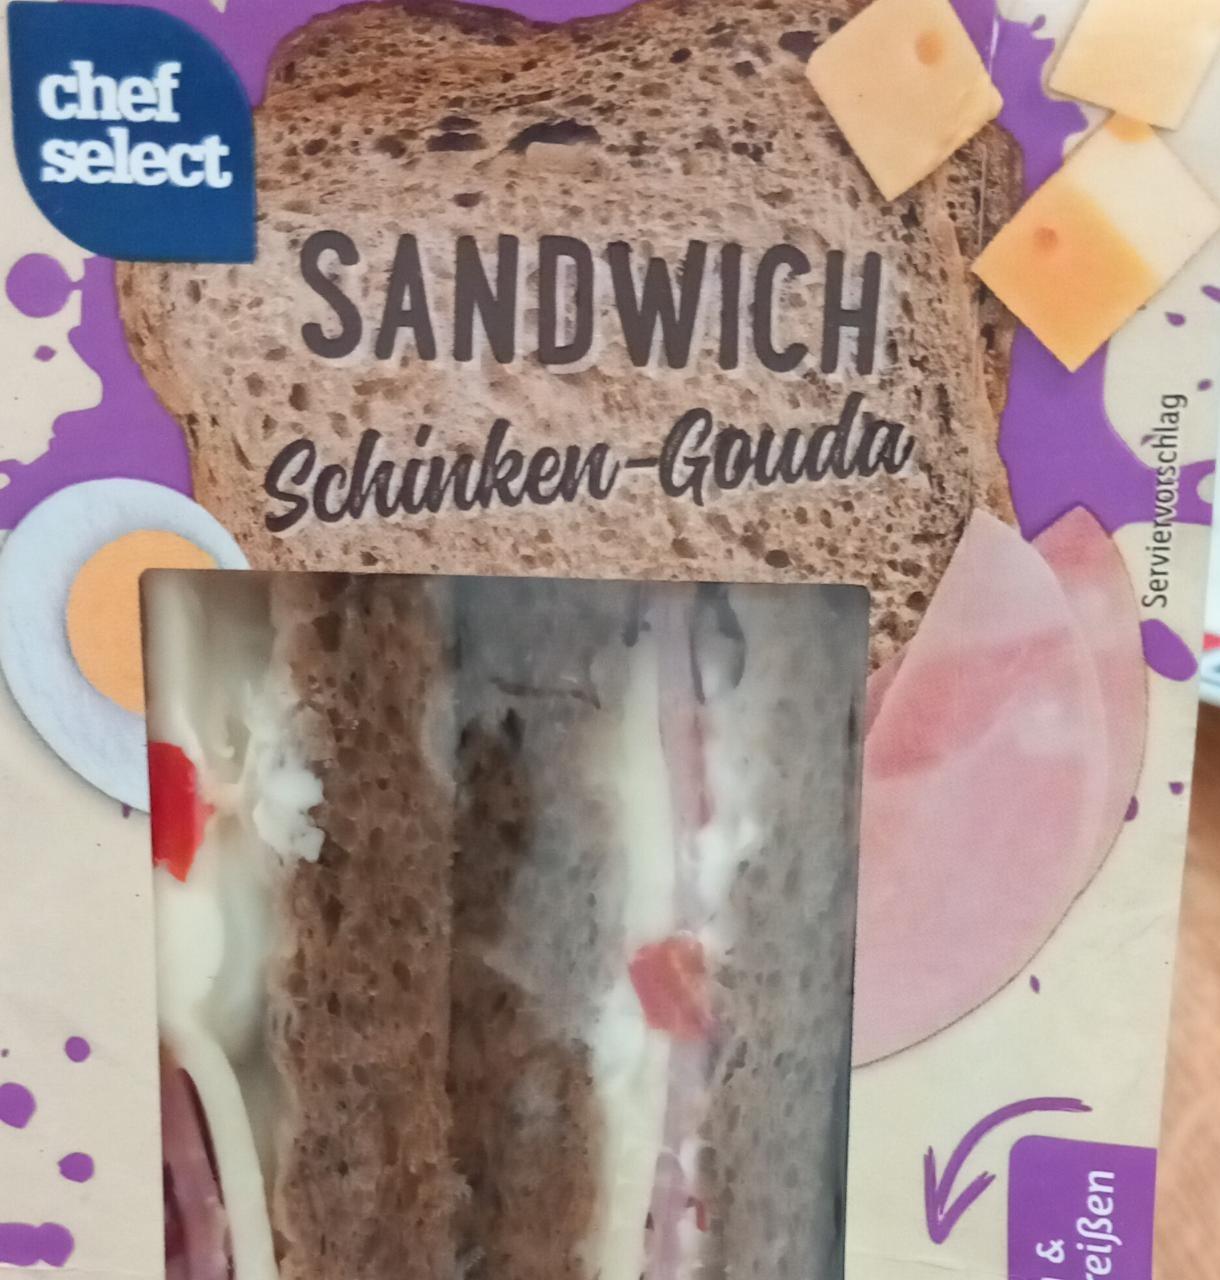 Chef hodnoty kJ a Select kalorie, nutriční Schinken-Gouda - Sandwich